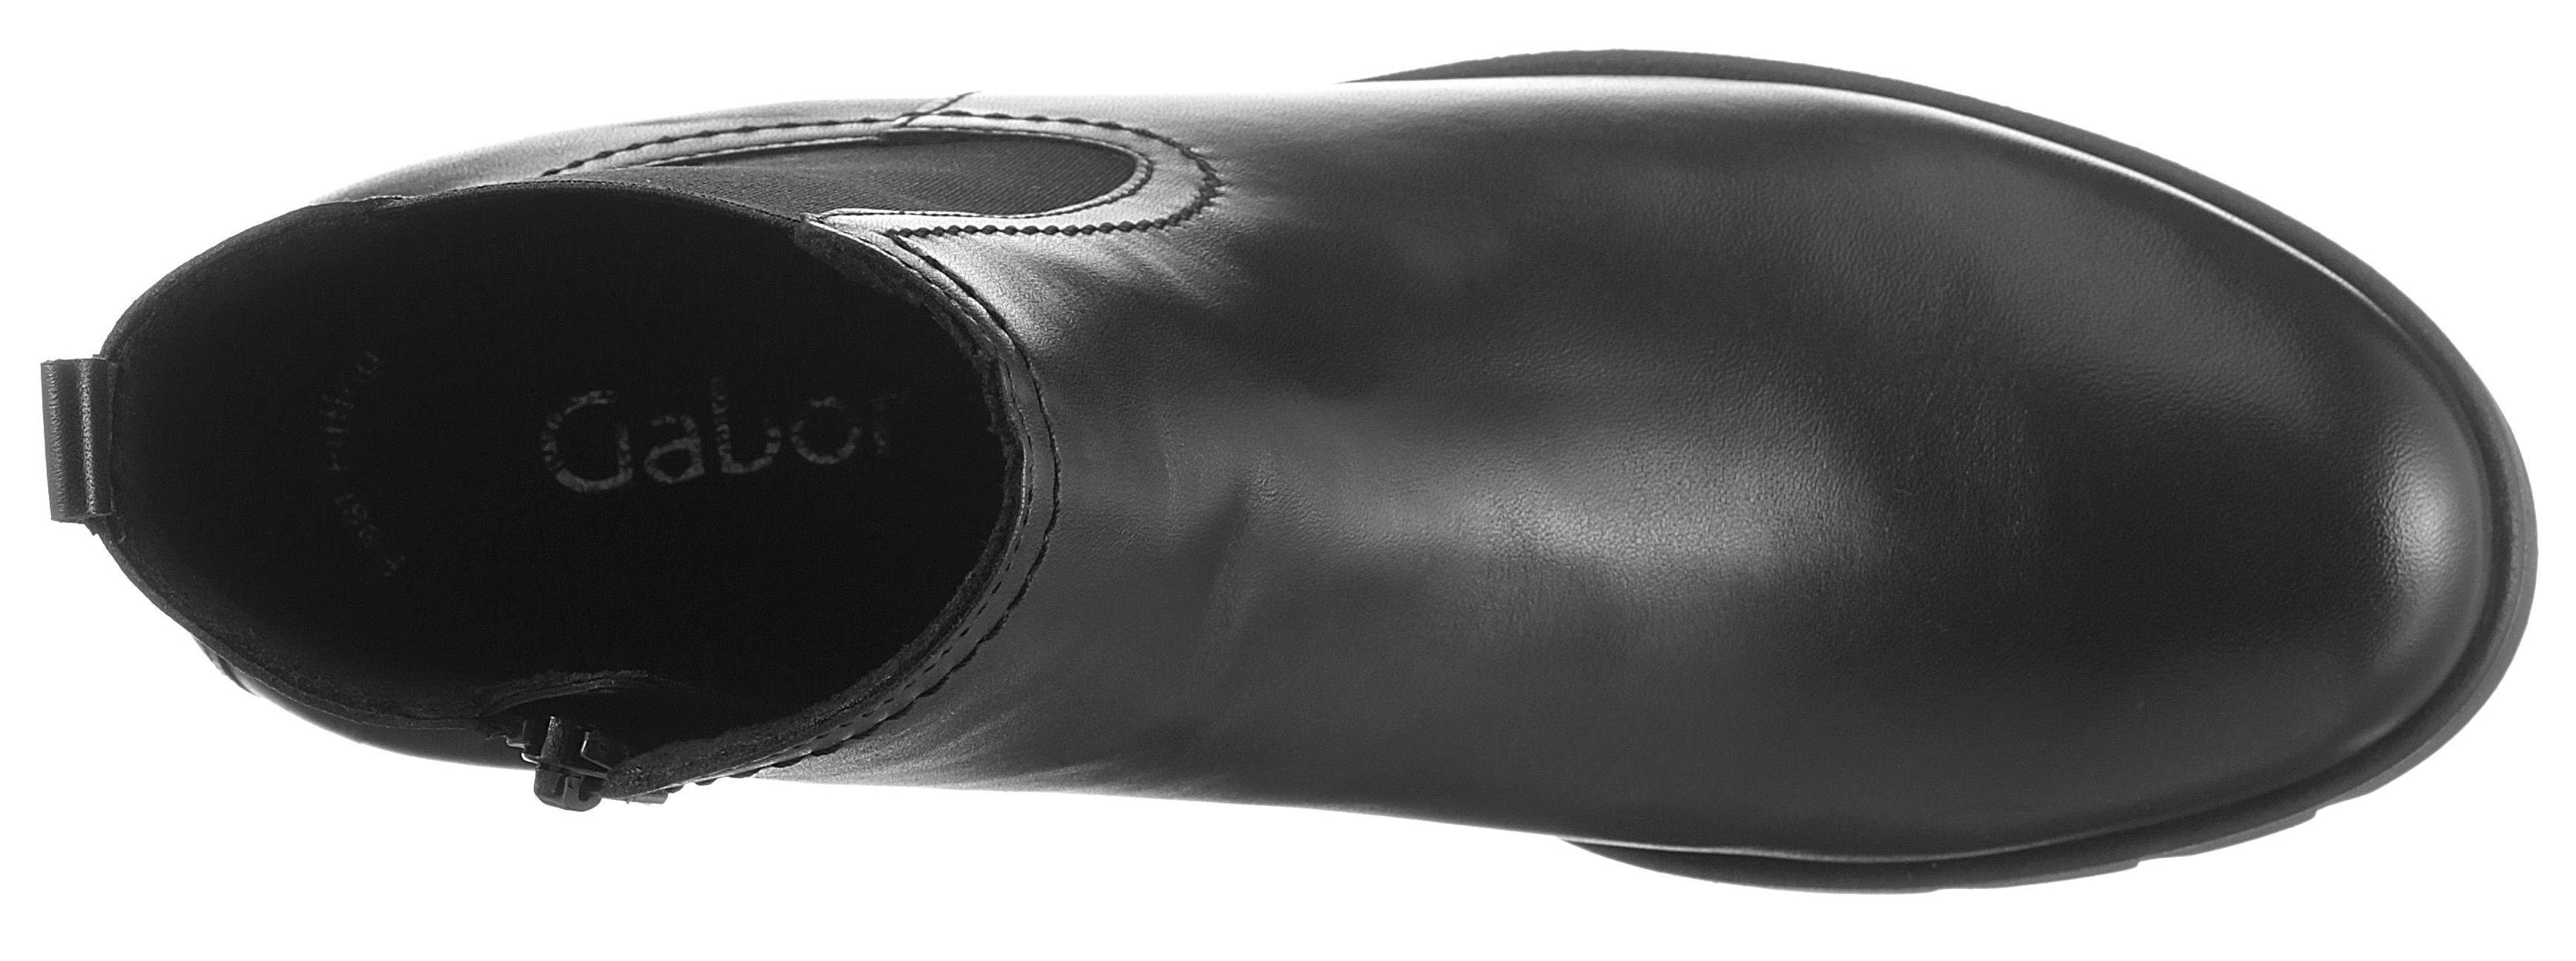 Gabor Chelseaboots mit angesagter Profilsohle schwarz